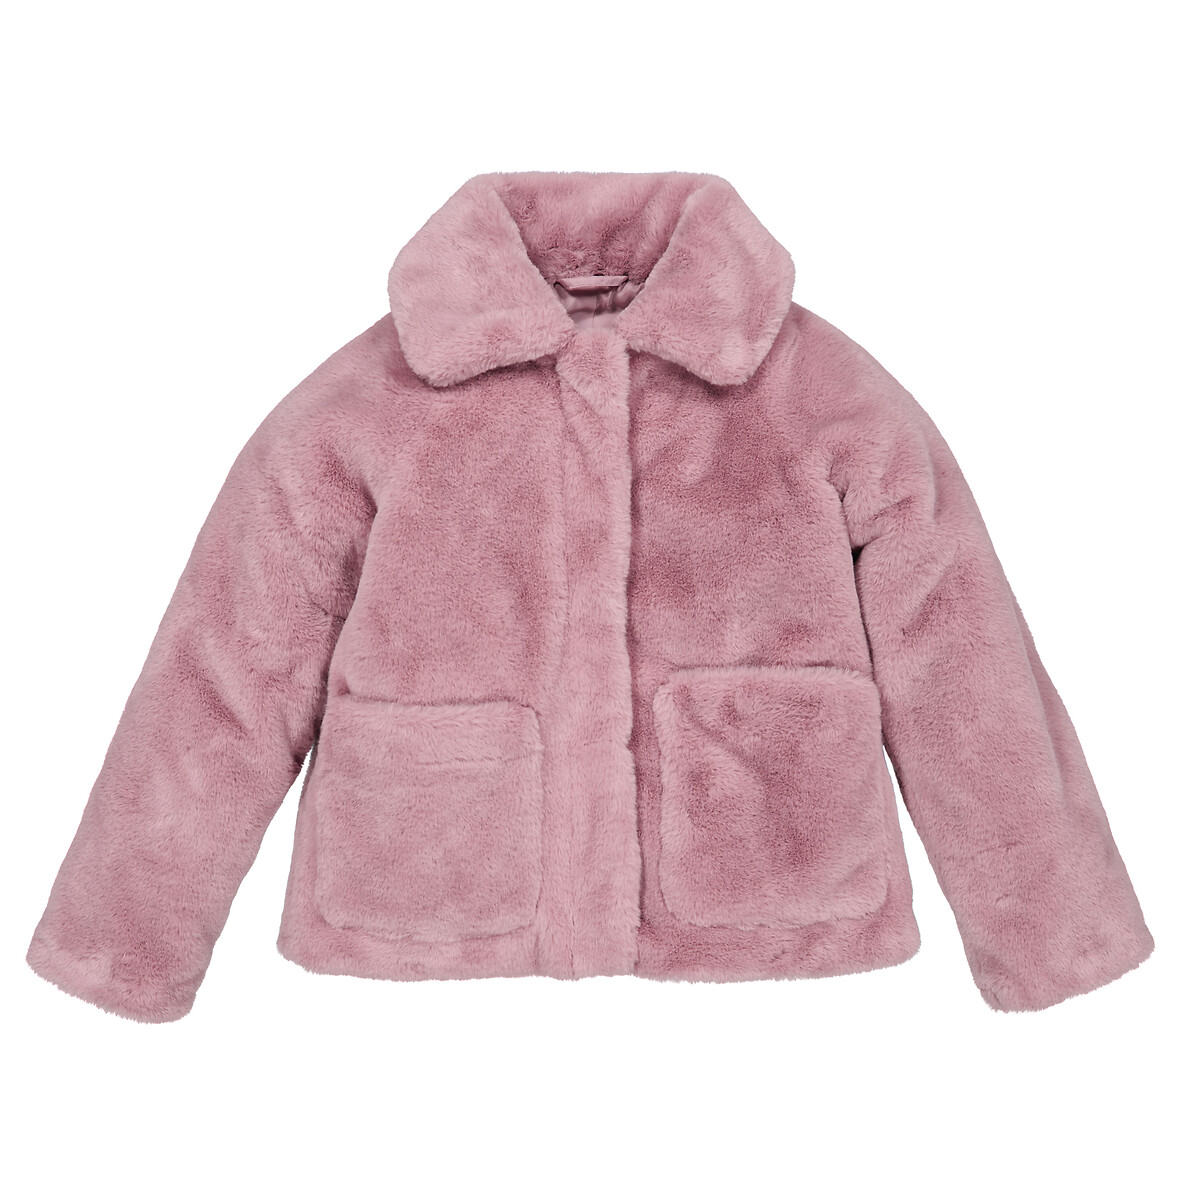 Пальто Утепленное из искусственного меха 3 года - 94 см розовый LaRedoute, размер 3 года - 94 см - фото 3